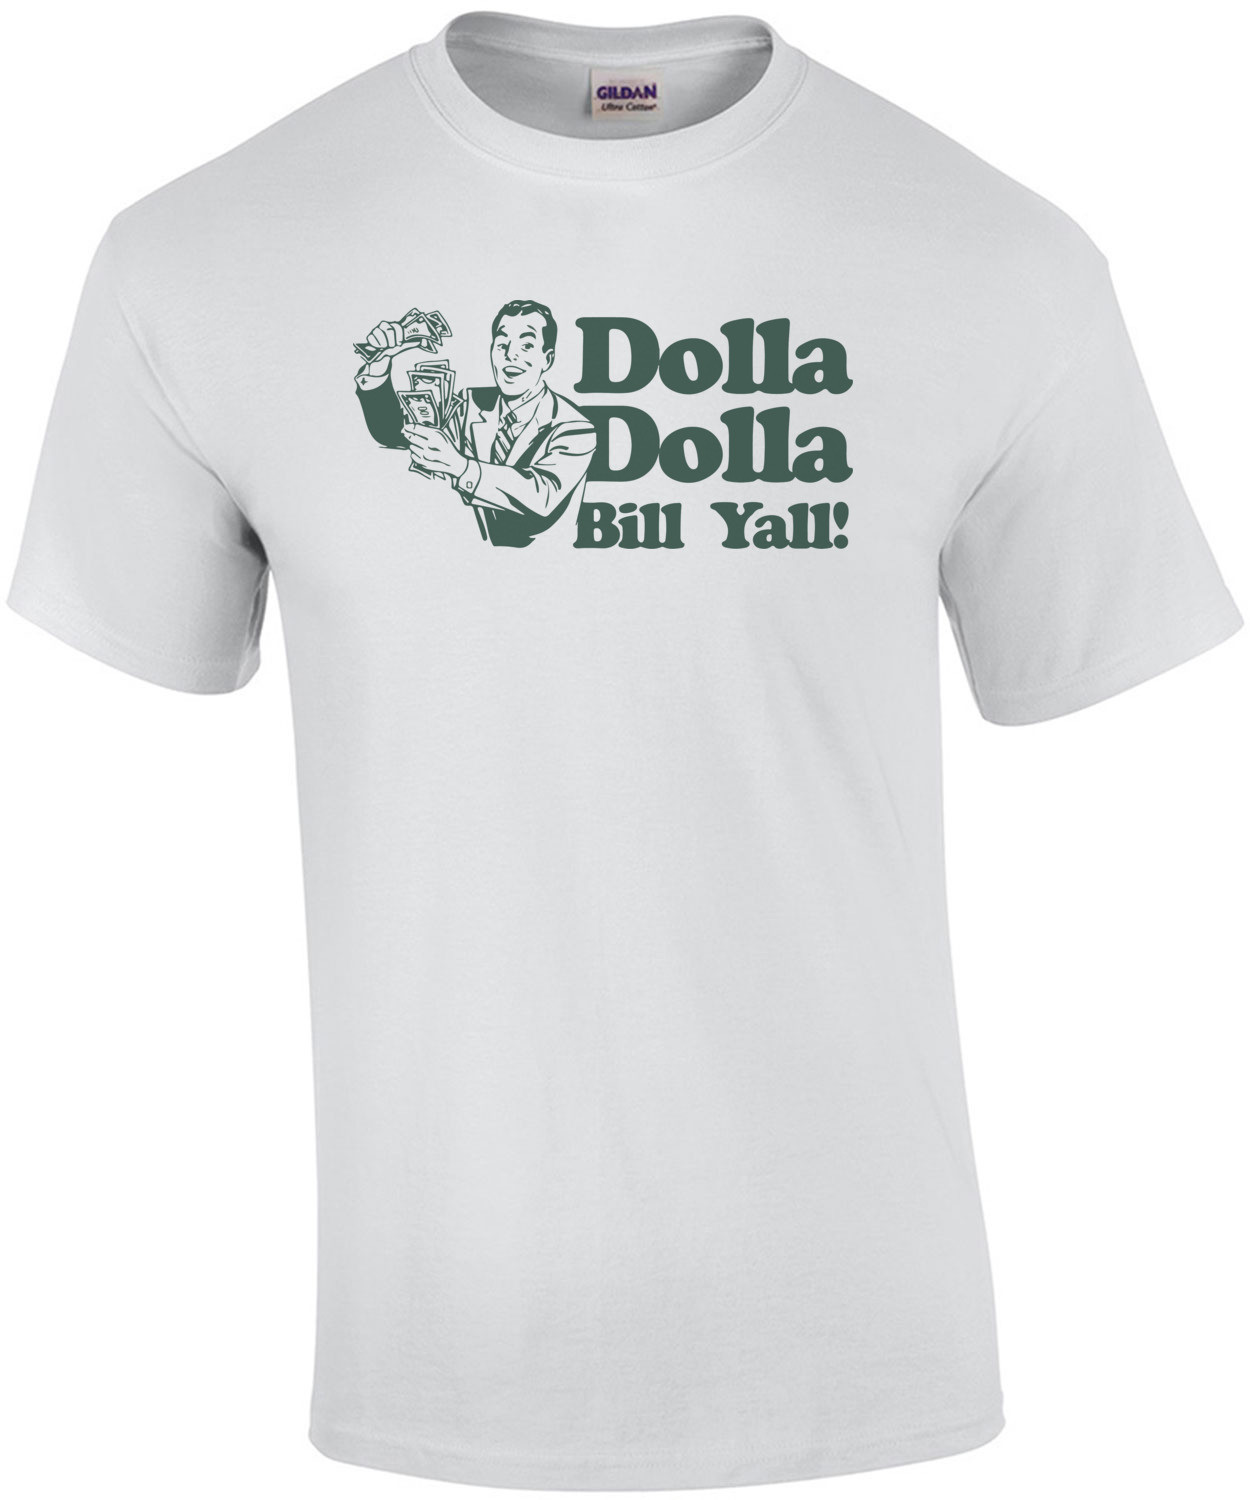 Dolla Dolla Bill Yall! T-Shirt